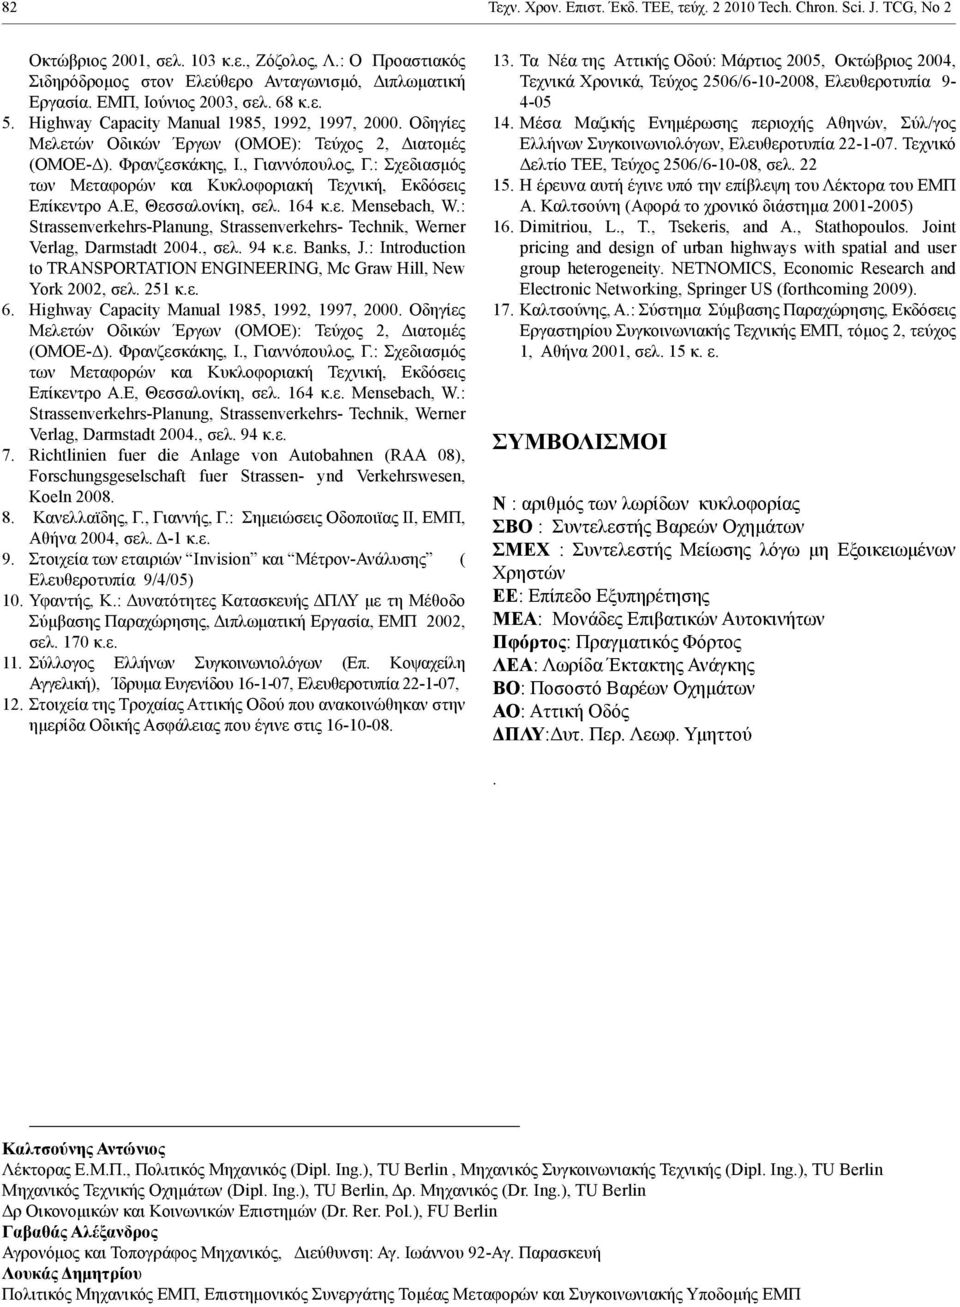 : Σχεδιασμός των Μεταφορών και Κυκλοφοριακή Τεχνική, Εκδόσεις Επίκεντρο Α.Ε, Θεσσαλονίκη, σελ. 164 κ.ε. Mensebach, W.